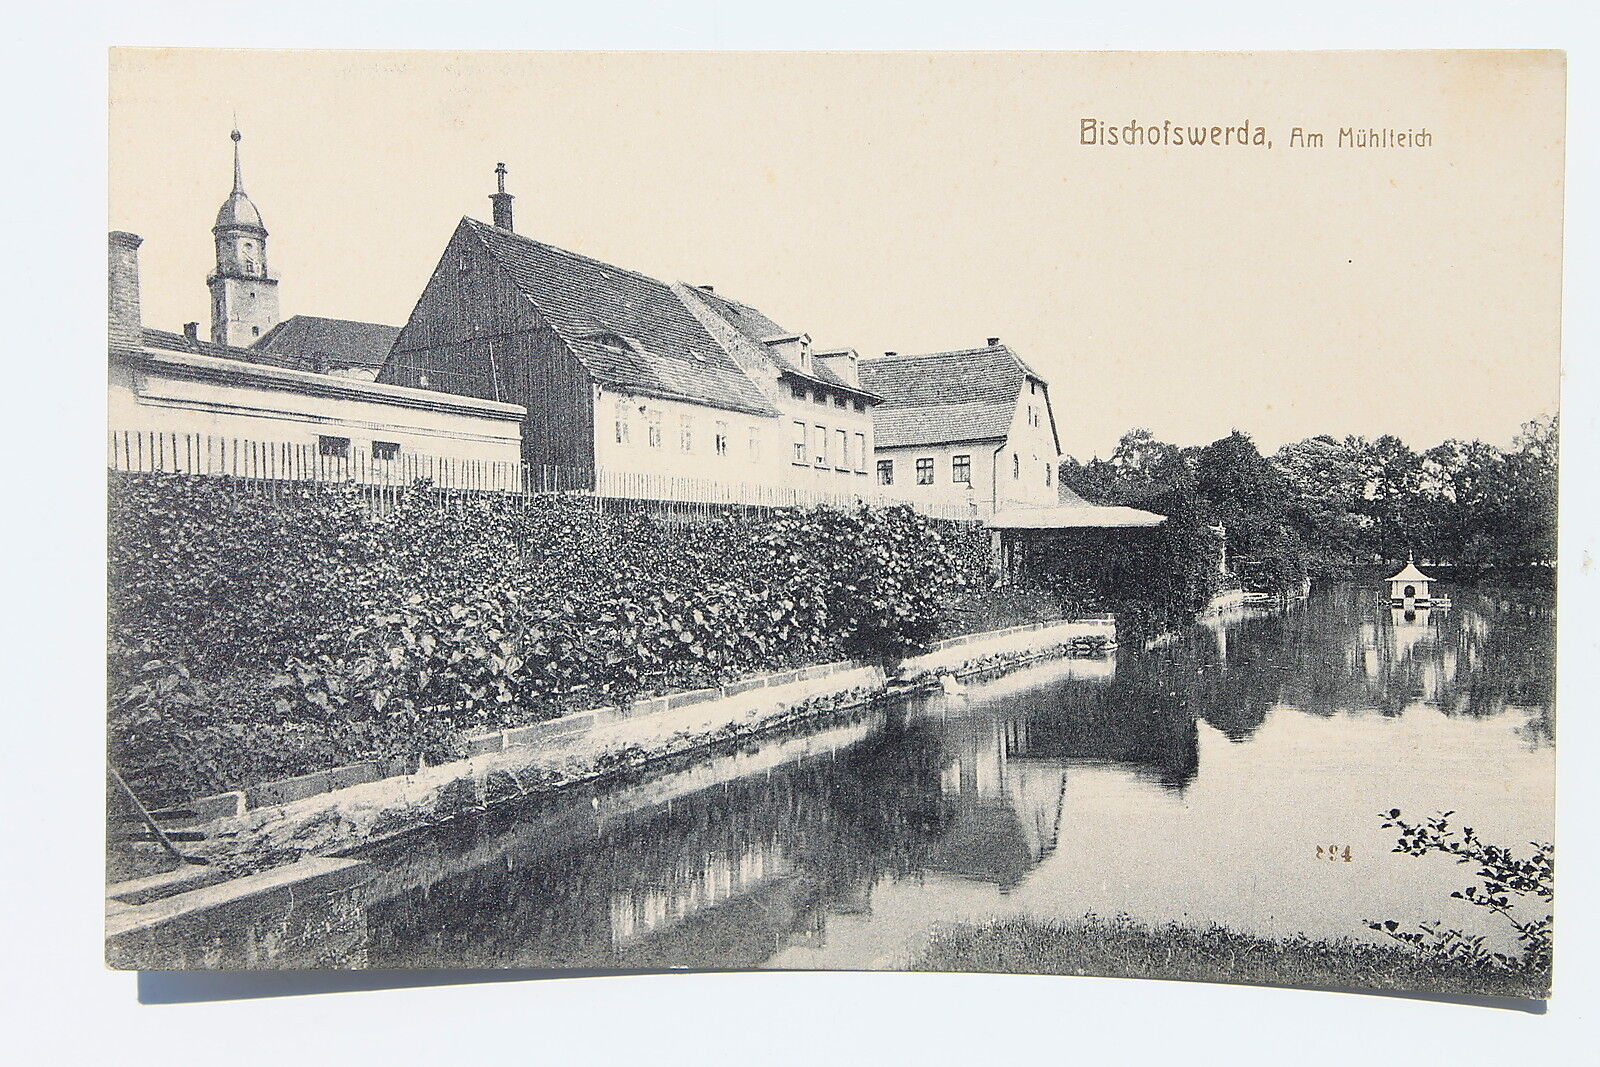 18660 Great Ak Bischofswerda Houses At Mühlteich 1817